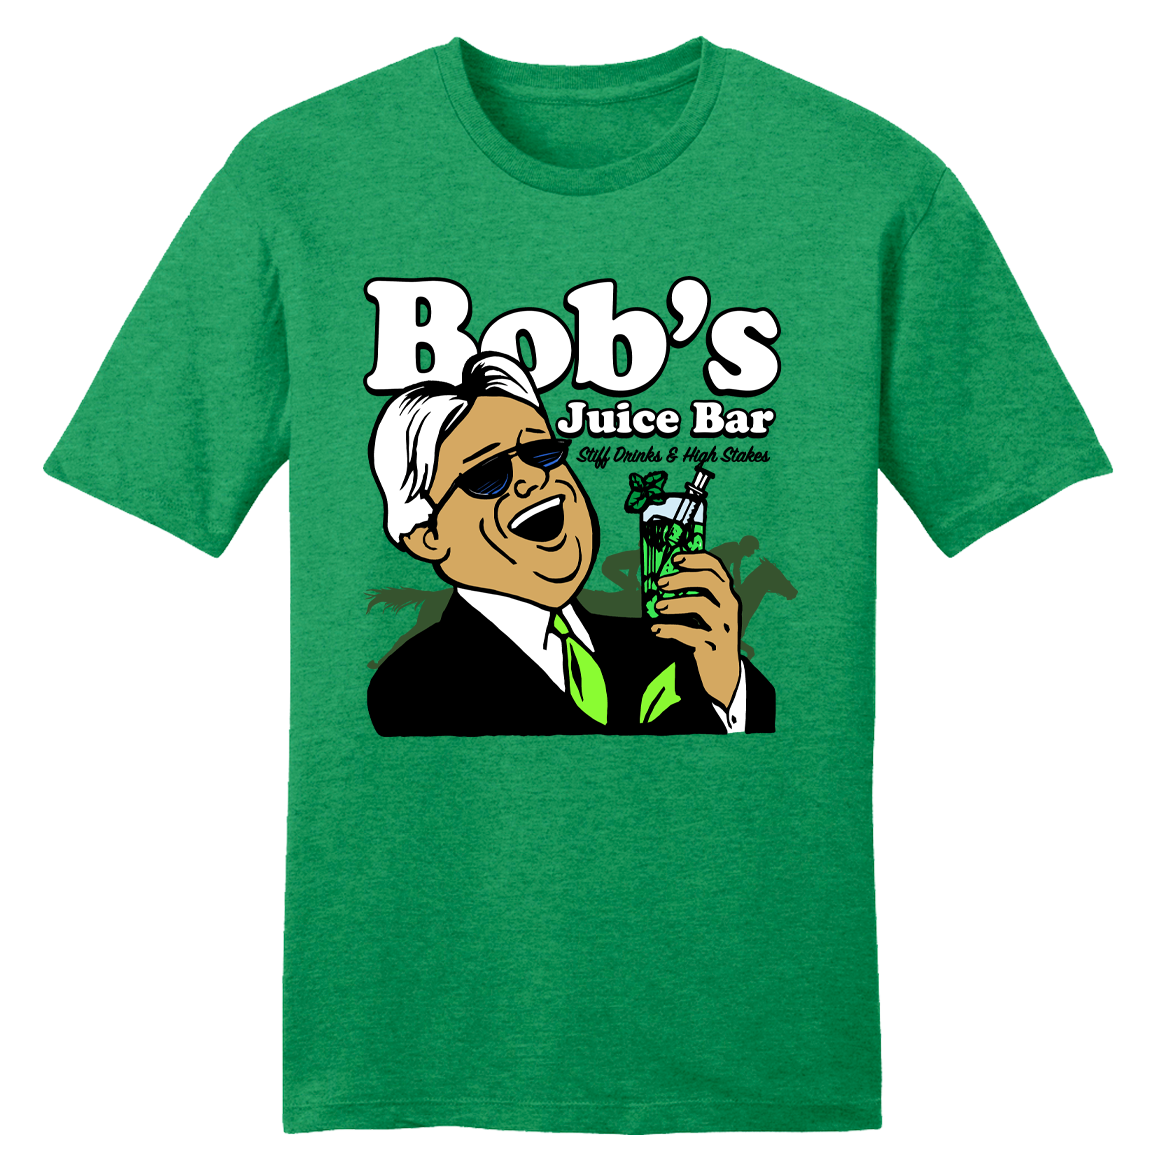 Bob's Juice Bar T-shirt